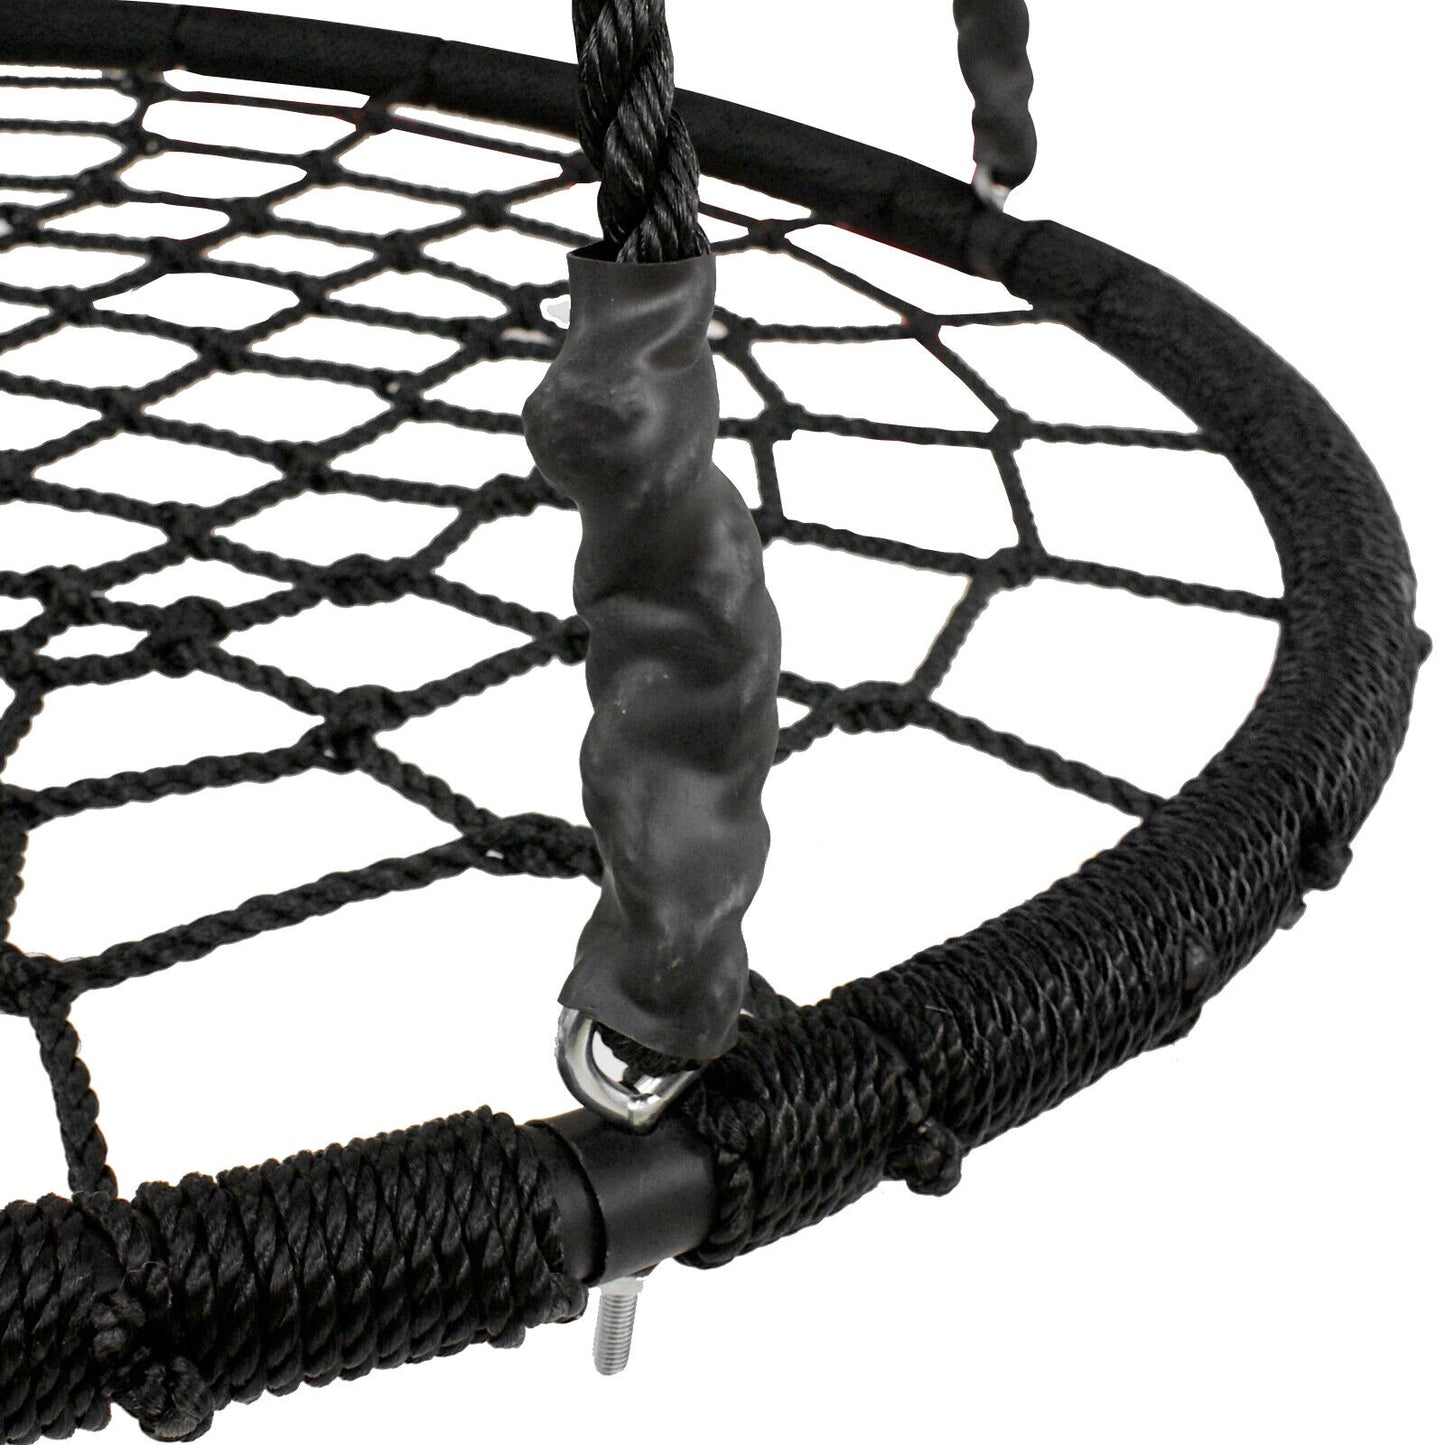 48" Spider Web Swing Set Large Platform Net Adjustable Hanging Ropes for Kids